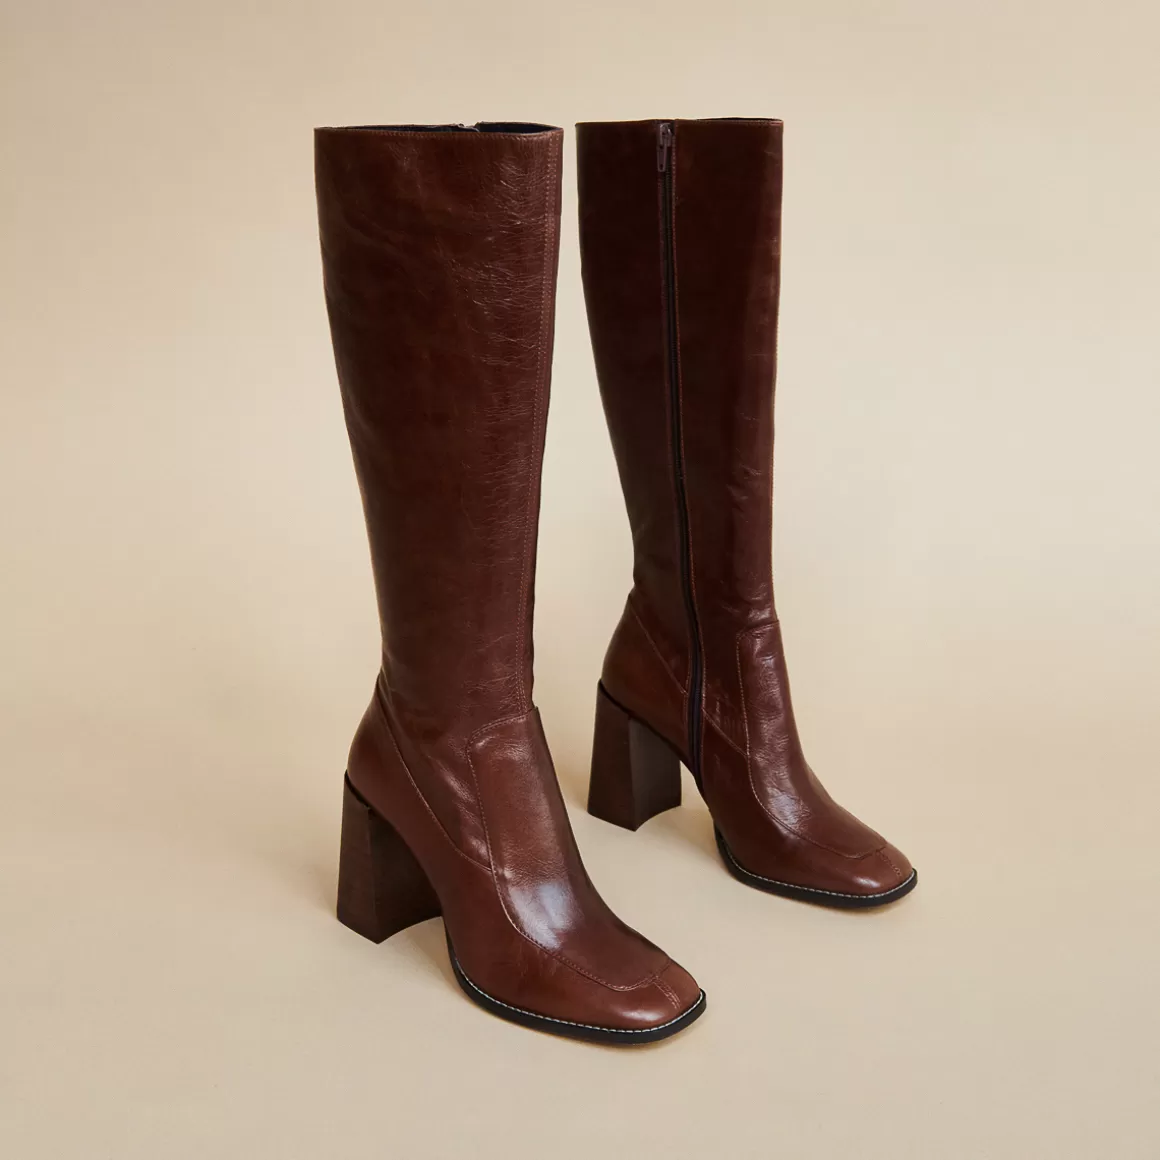 High boots<Jonak Online